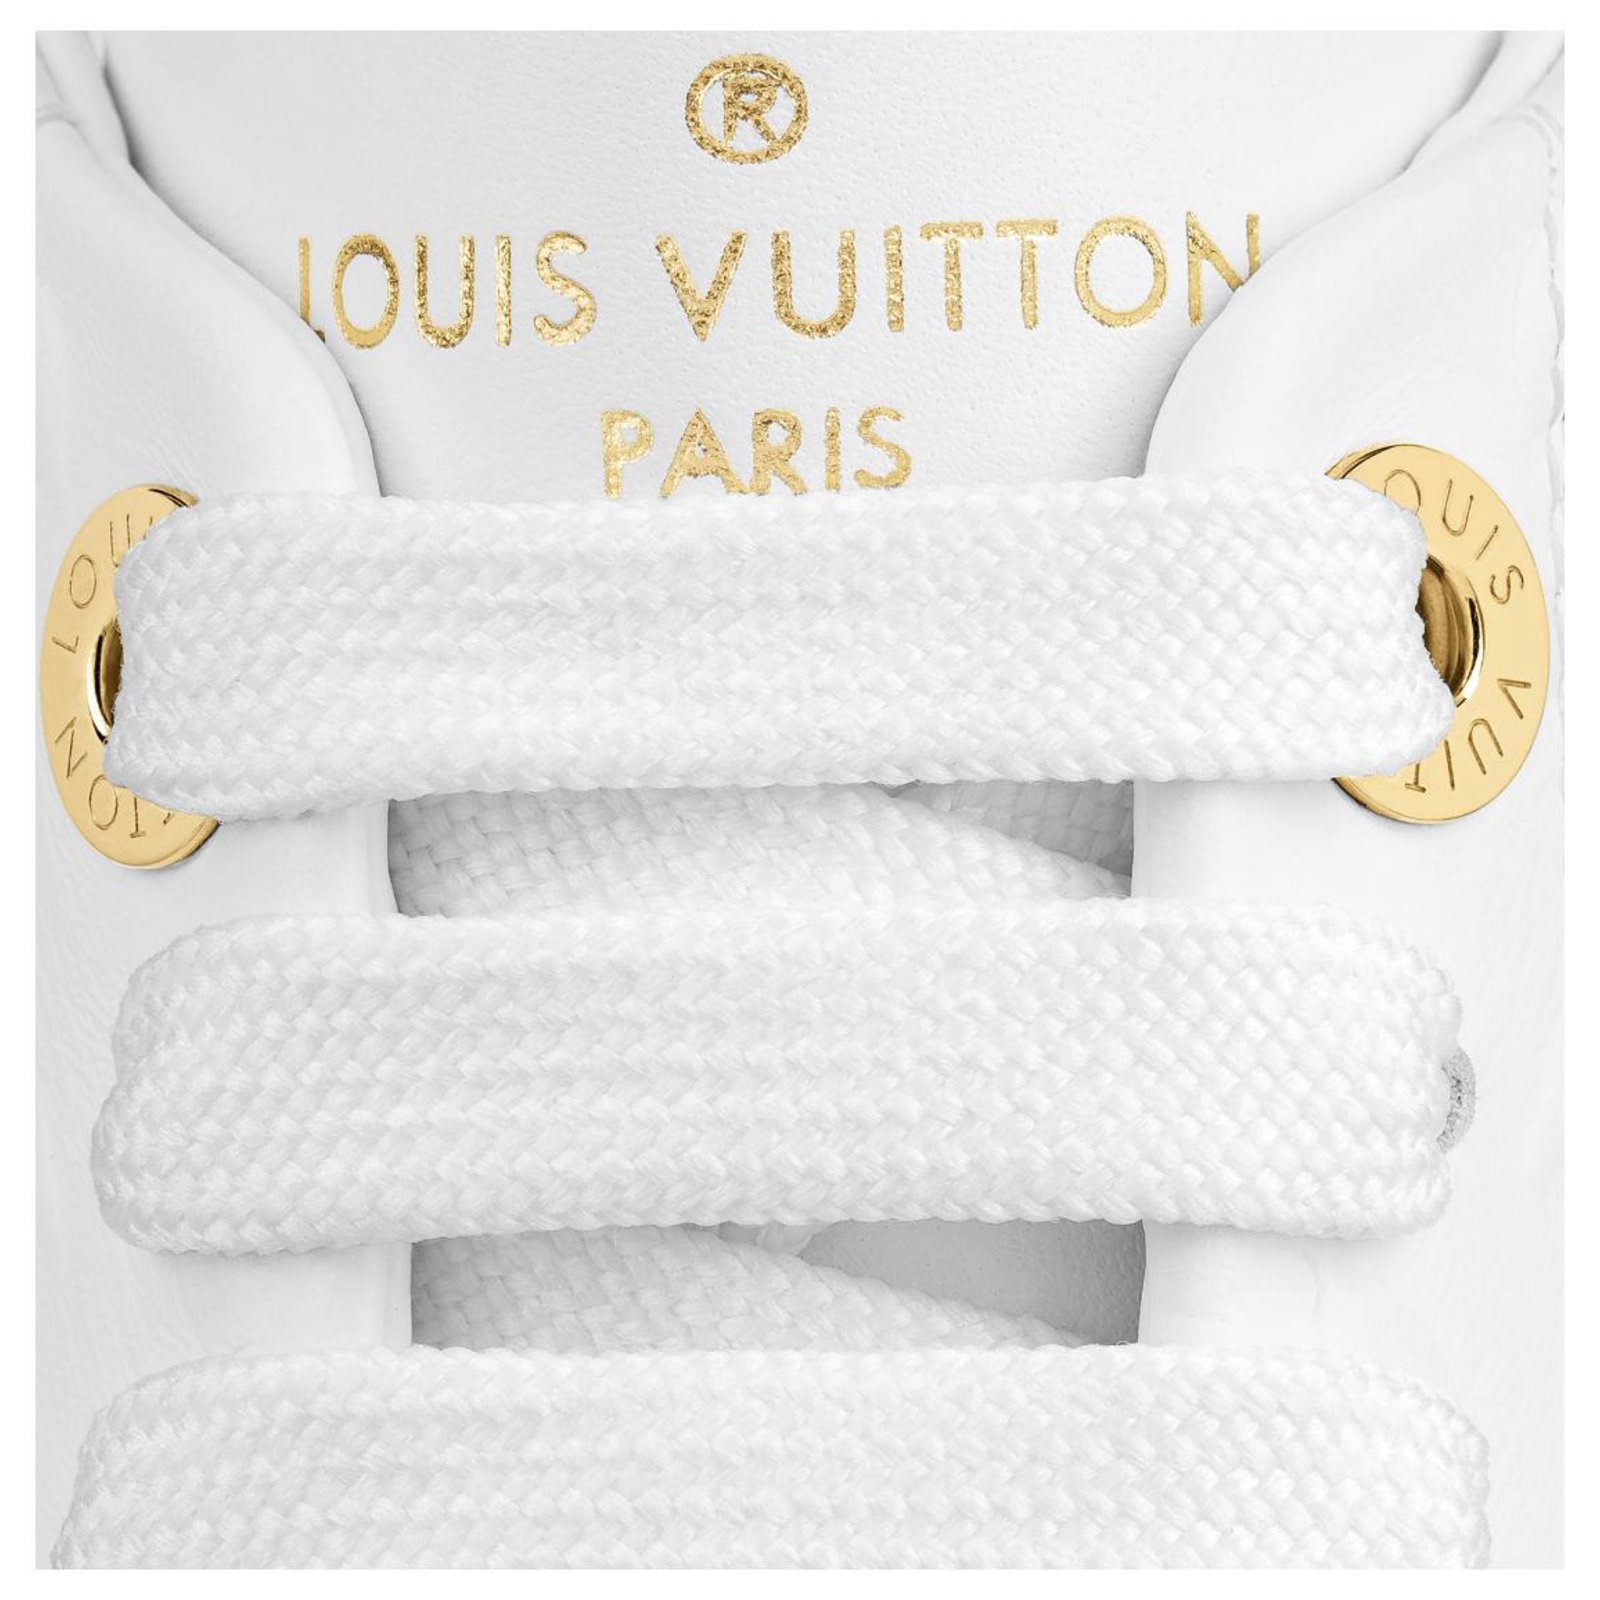 Louis Vuitton Time Out, Baskets Transparentes pour l'Été - MaxiTendance